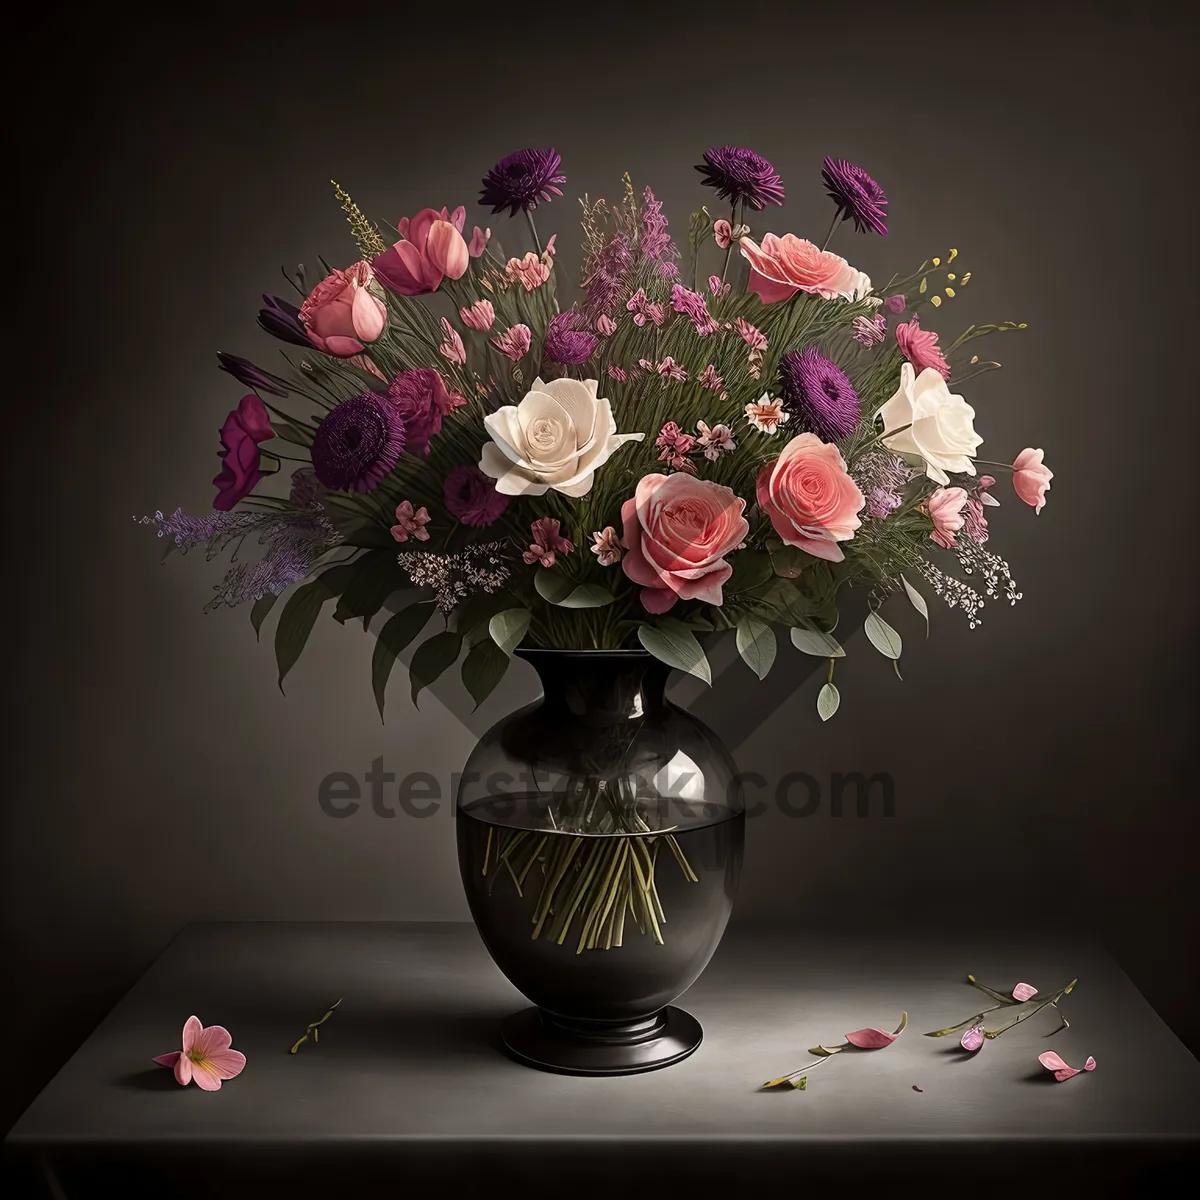 Picture of Floral Chandelier: Elegant Pink Flower Arrangement for Celebration